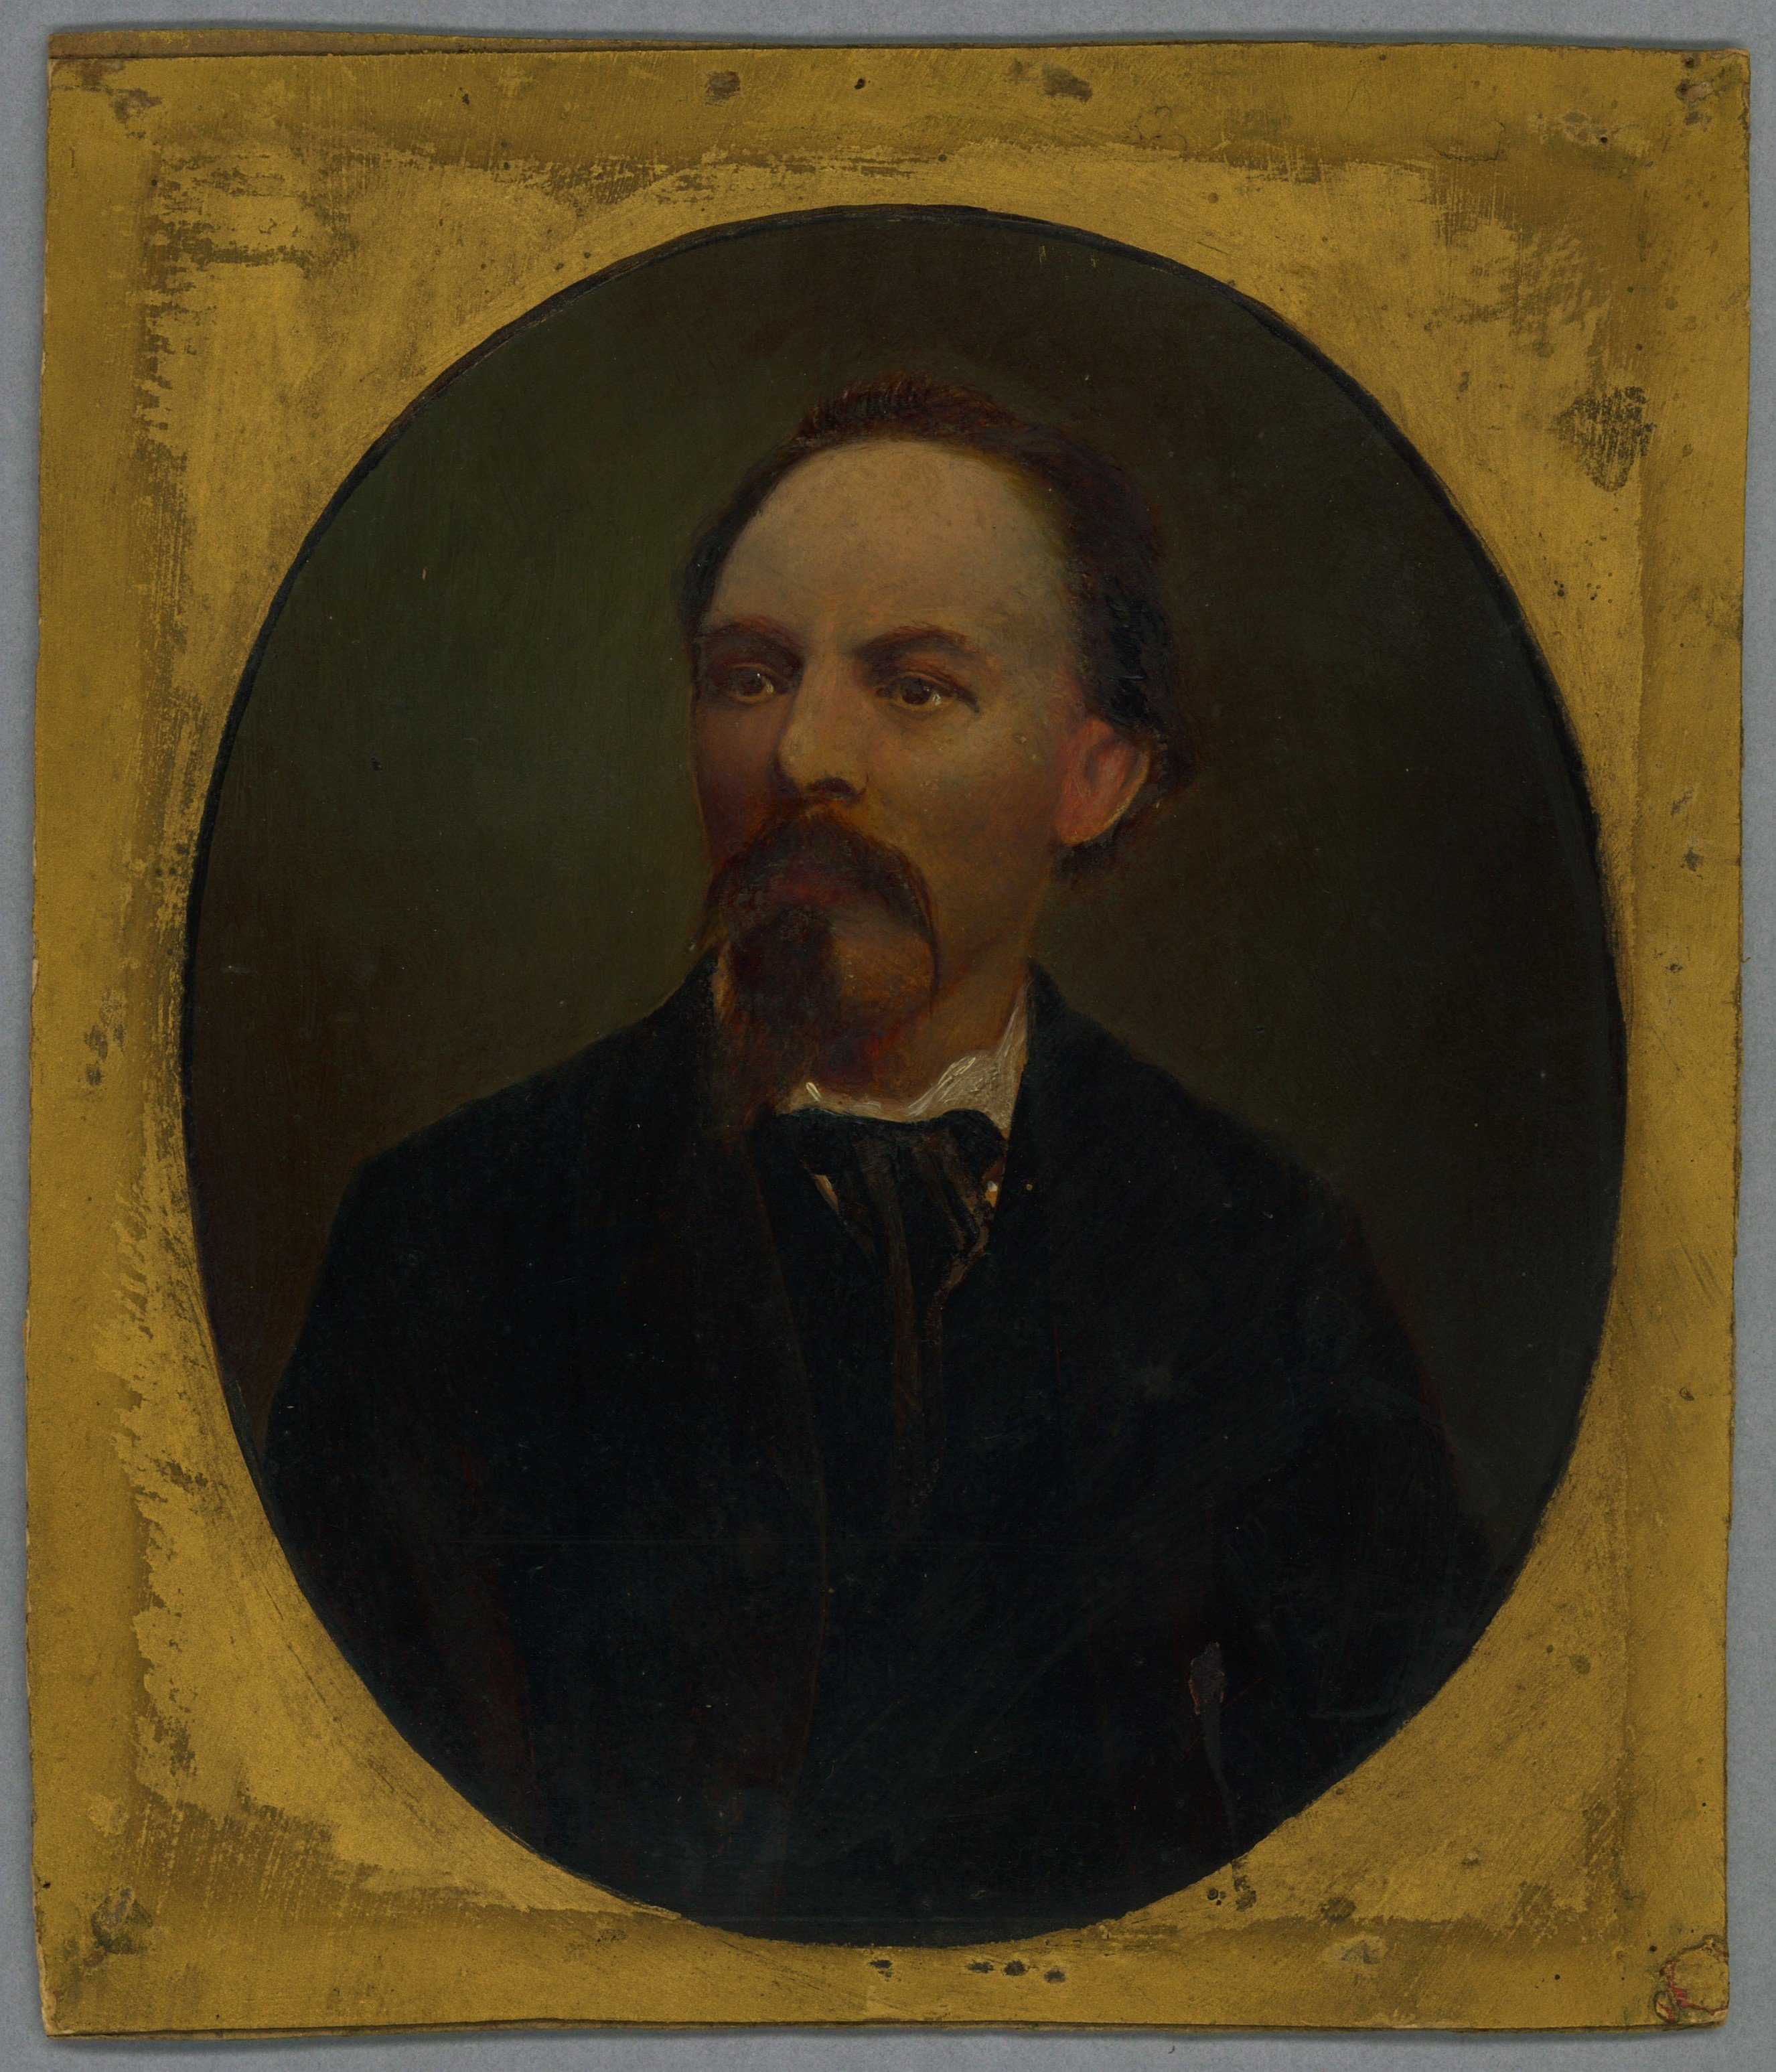 Prietz, Carl (1830-1921), Maler in Berlin (Landesgeschichtliche Vereinigung für die Mark Brandenburg e.V., Archiv CC BY)